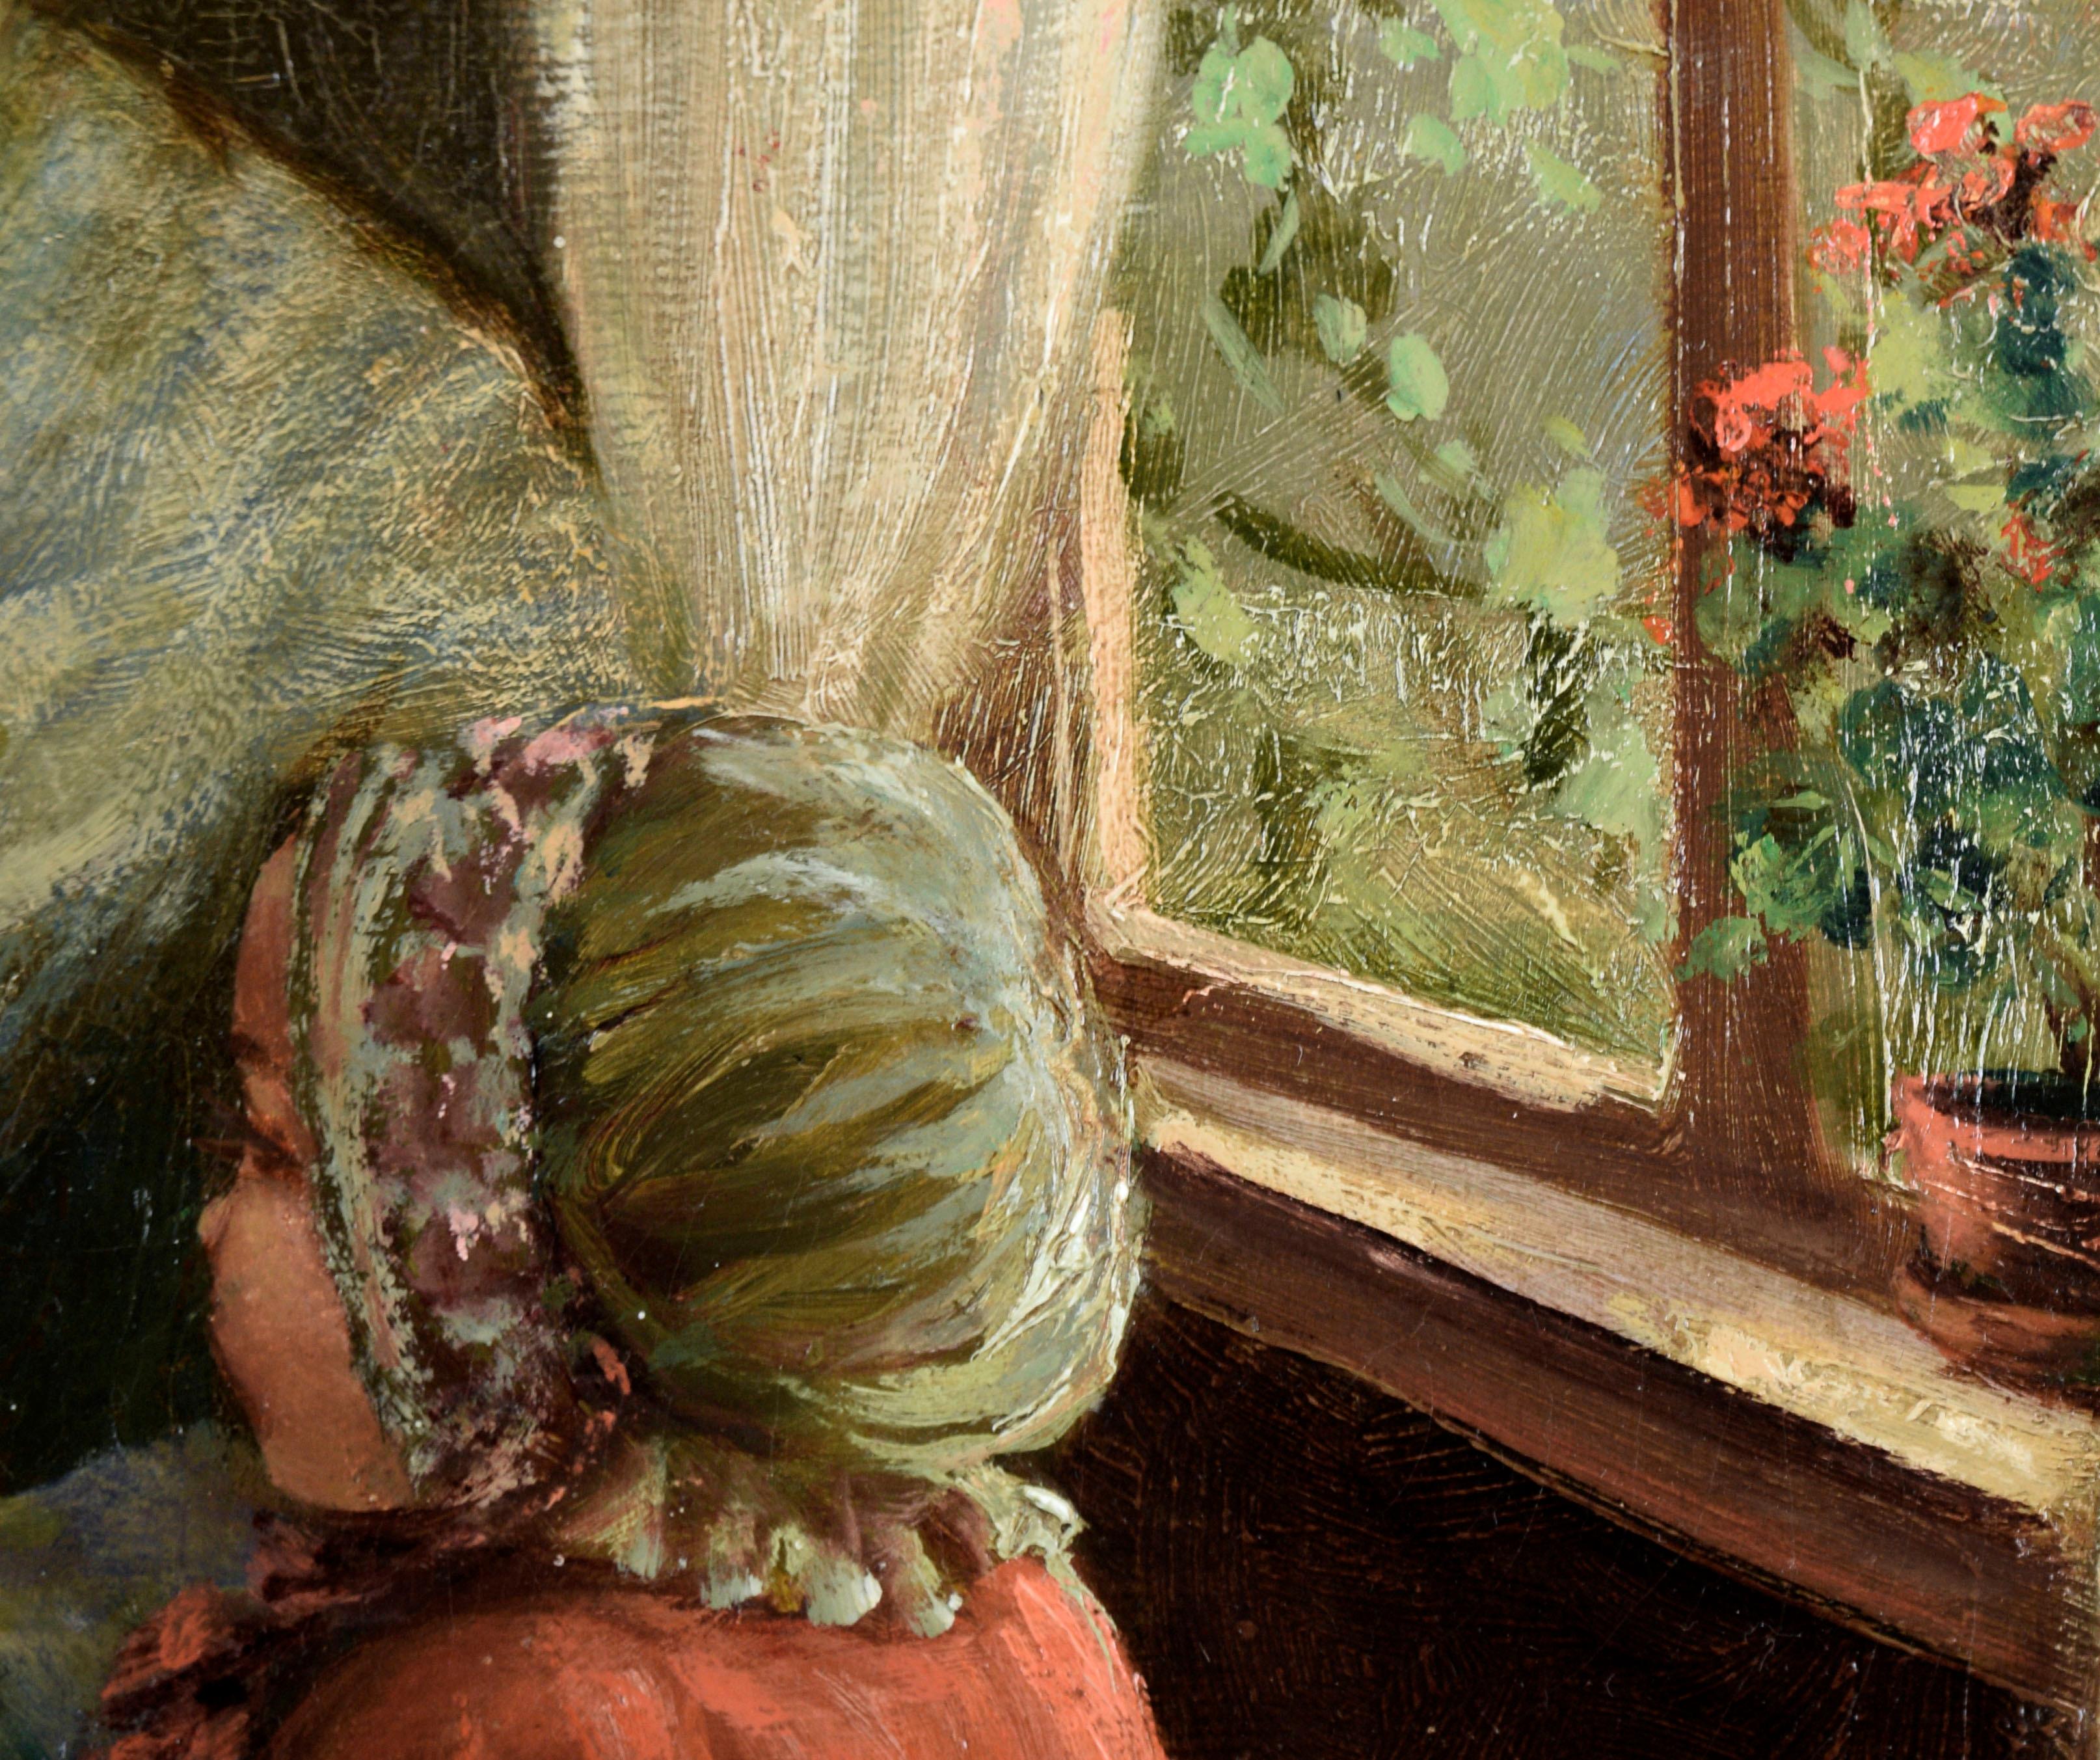 Frau mit zwei Kindern in Rot - Interieur-Szene in Öl auf Leinwand

Hübsche Innenraumszene des bedeutenden Künstlers Joseph Tomanek (Cech-Amerikaner, 1889-1974). Eine Frau sitzt in der Nähe eines Fensters und hält ein kleines, leuchtend rot